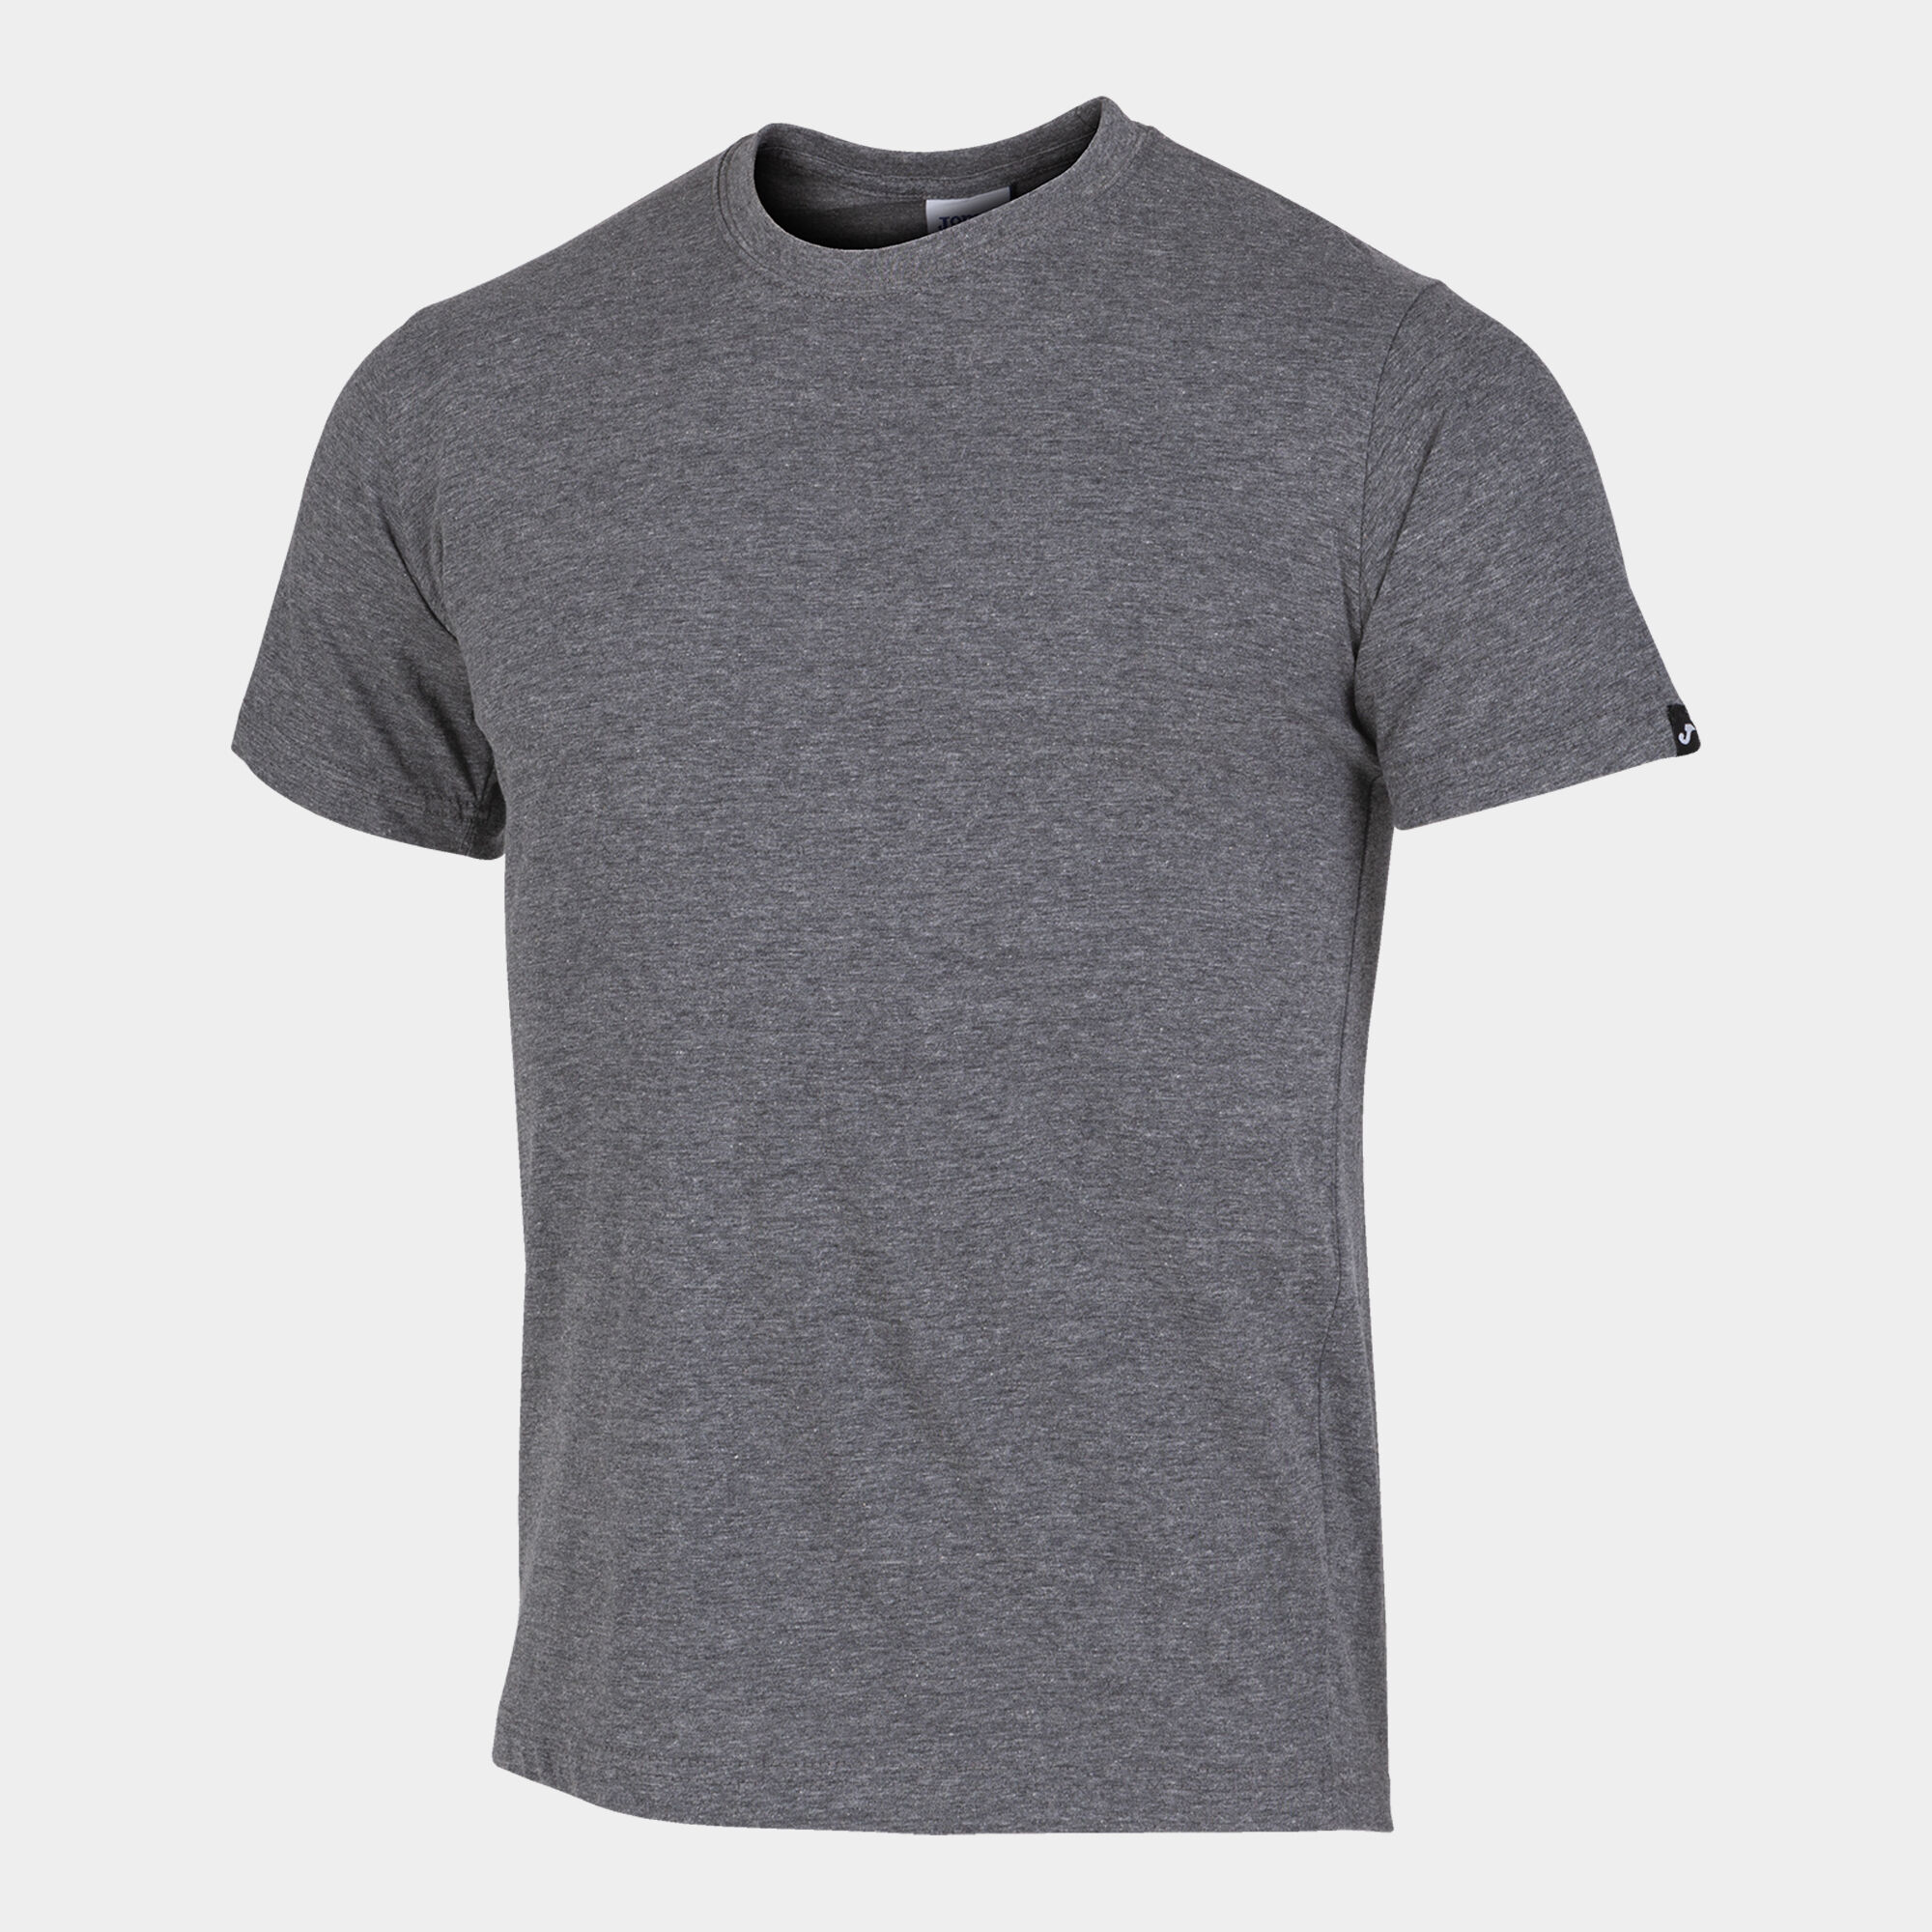 Shirt short sleeve man Desert melange gray